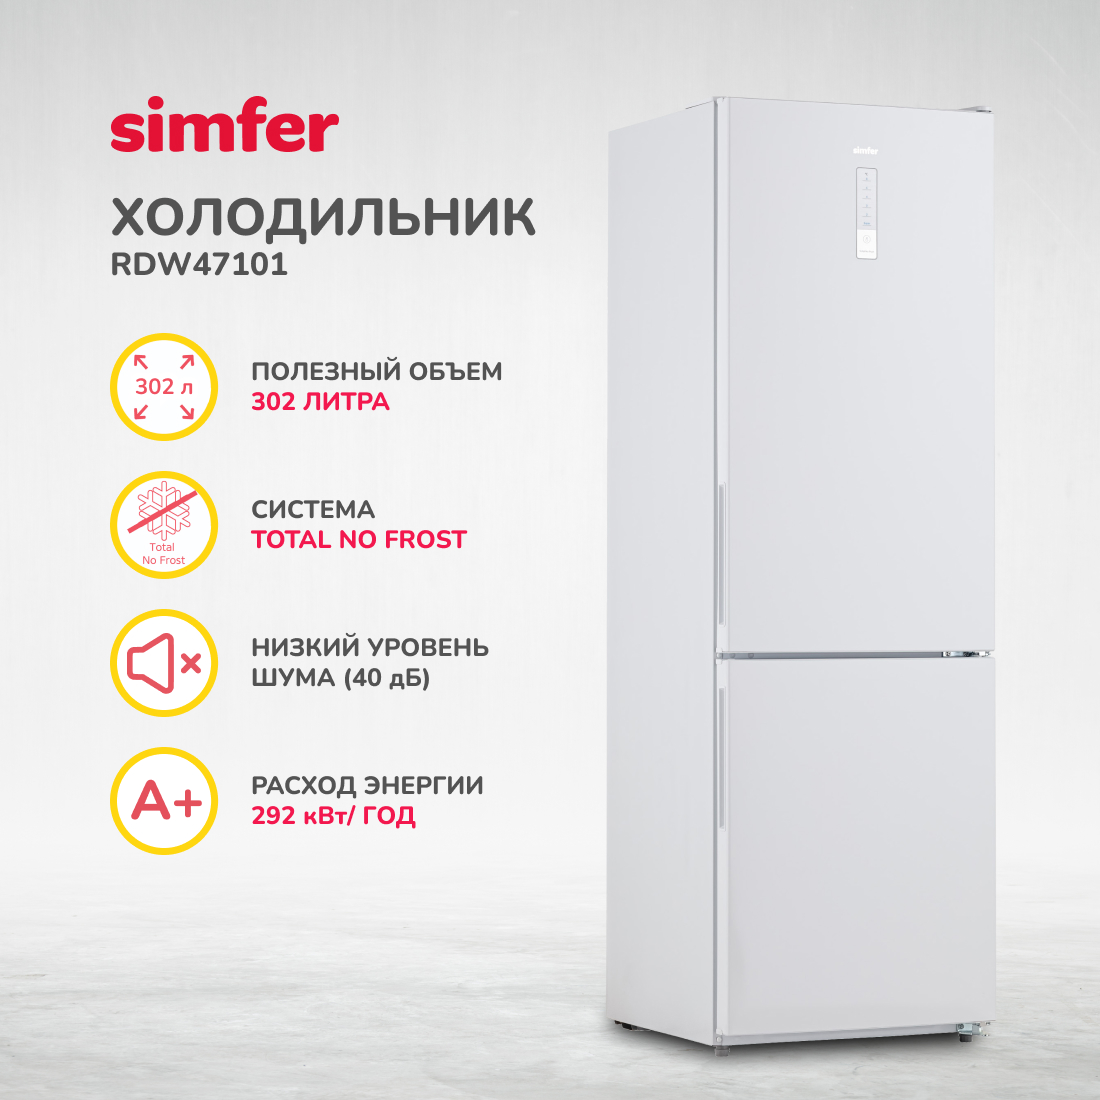 Холодильник Simfer RDW47101, No Frost, двухкамерный, 302 л профиль с экраном для лент alu power w35 2000 f anod frost arlight 015538